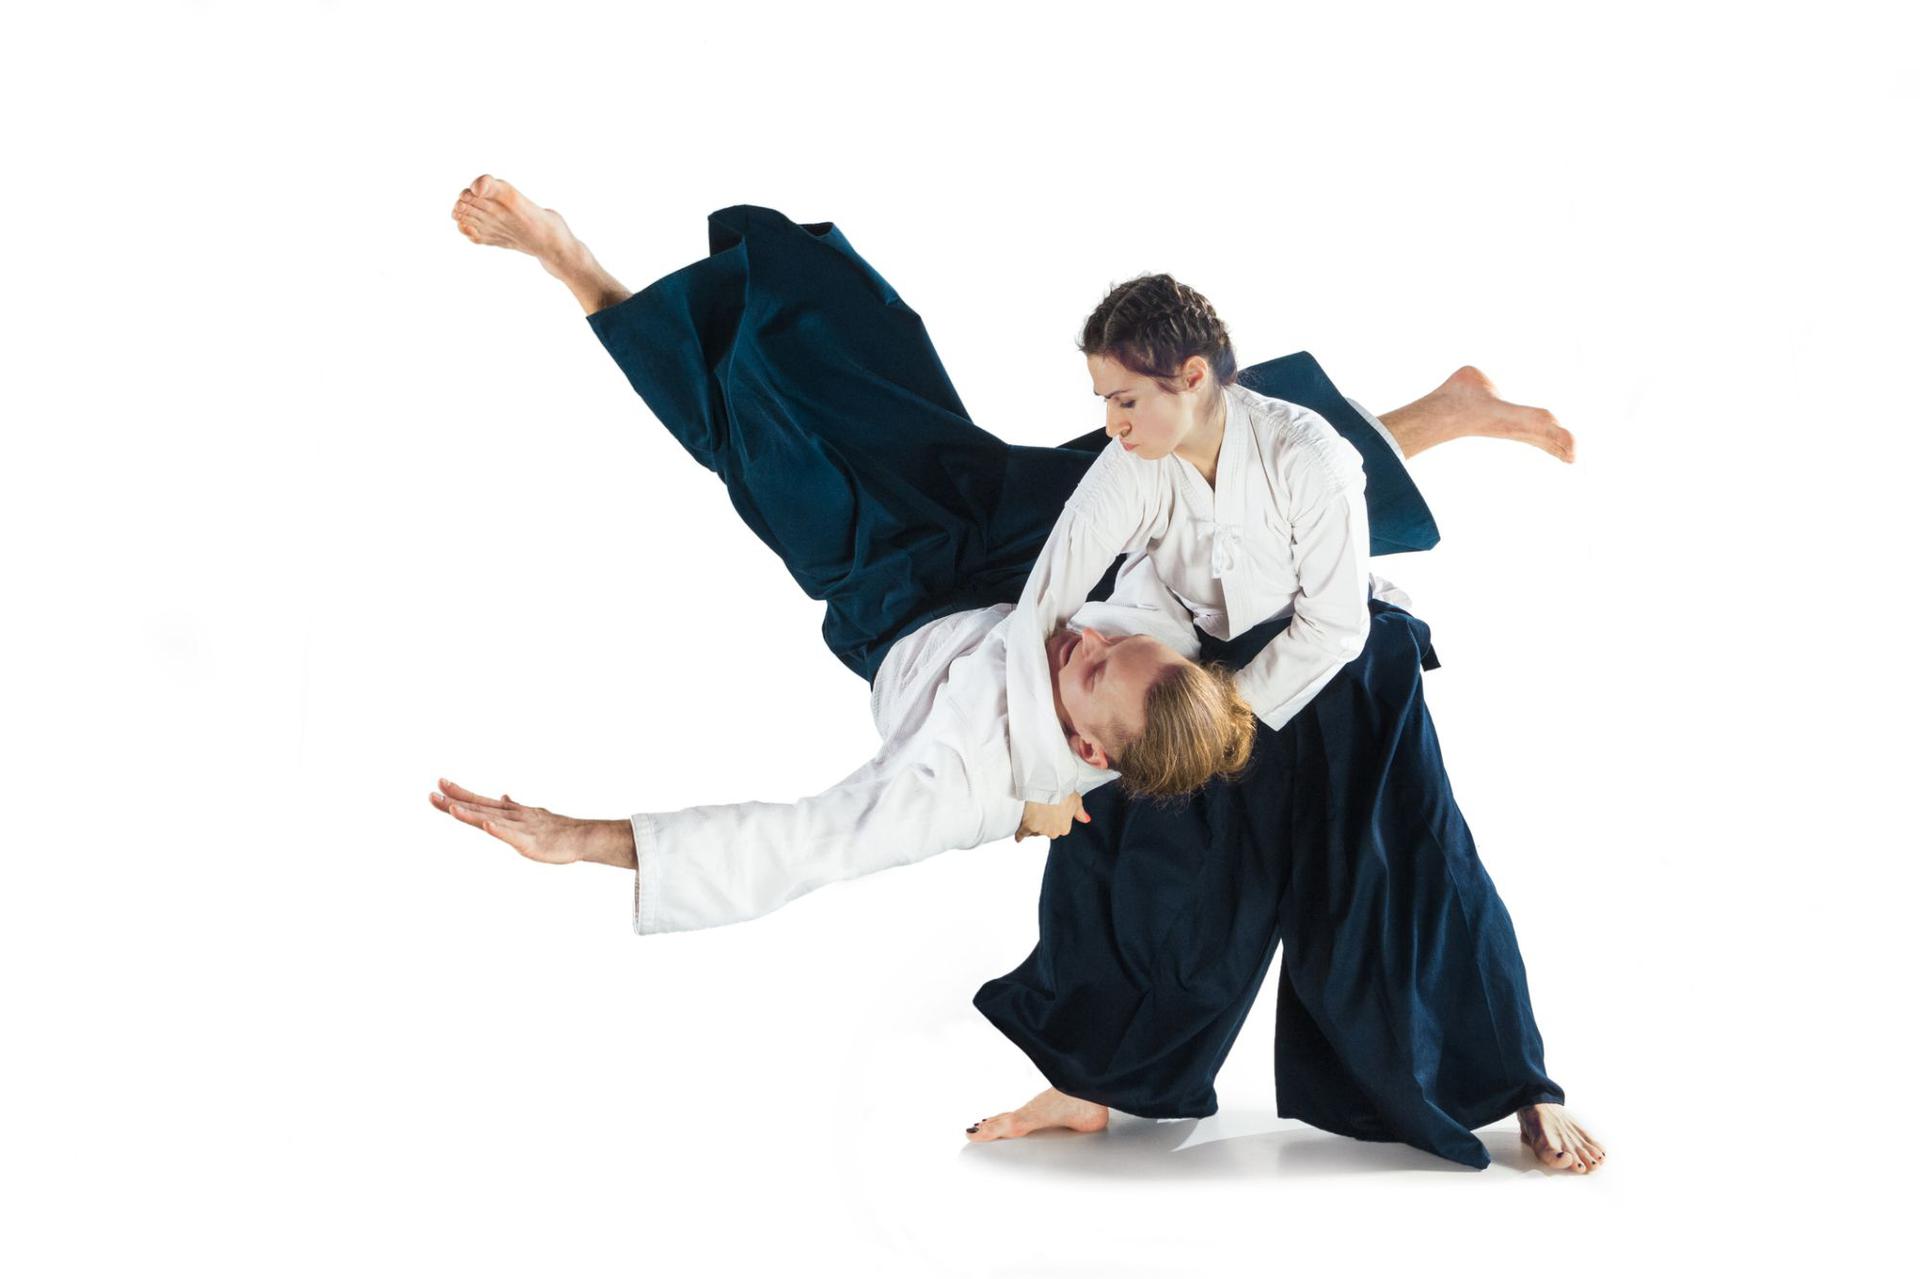 aikido-techniki-stopnie-i-efekty-trenowania-aikido-wformie24-pl